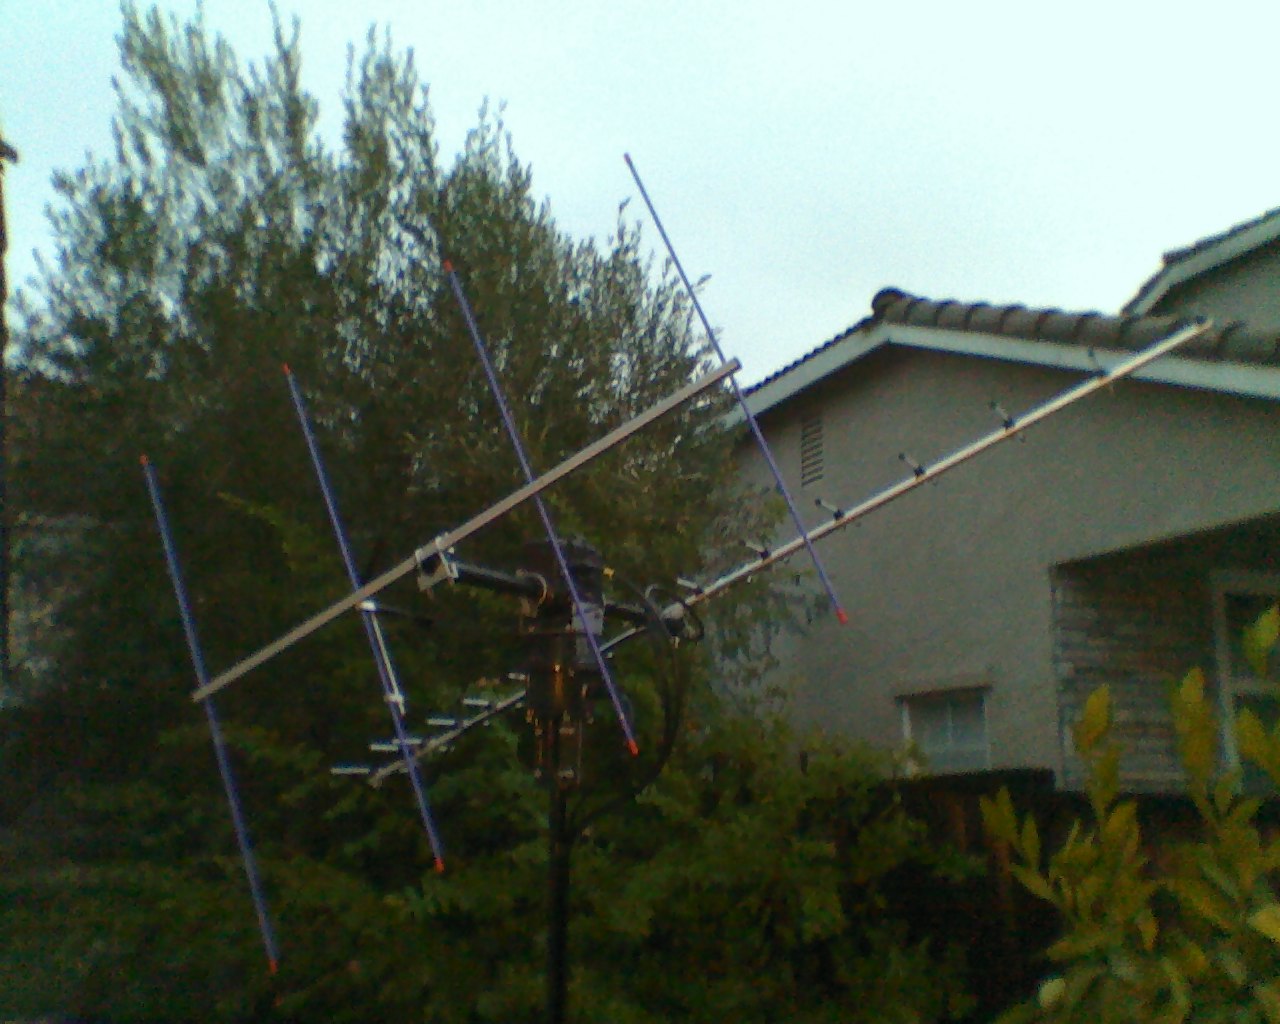 Kb5wia Amateur Radio New Satellite Antennas